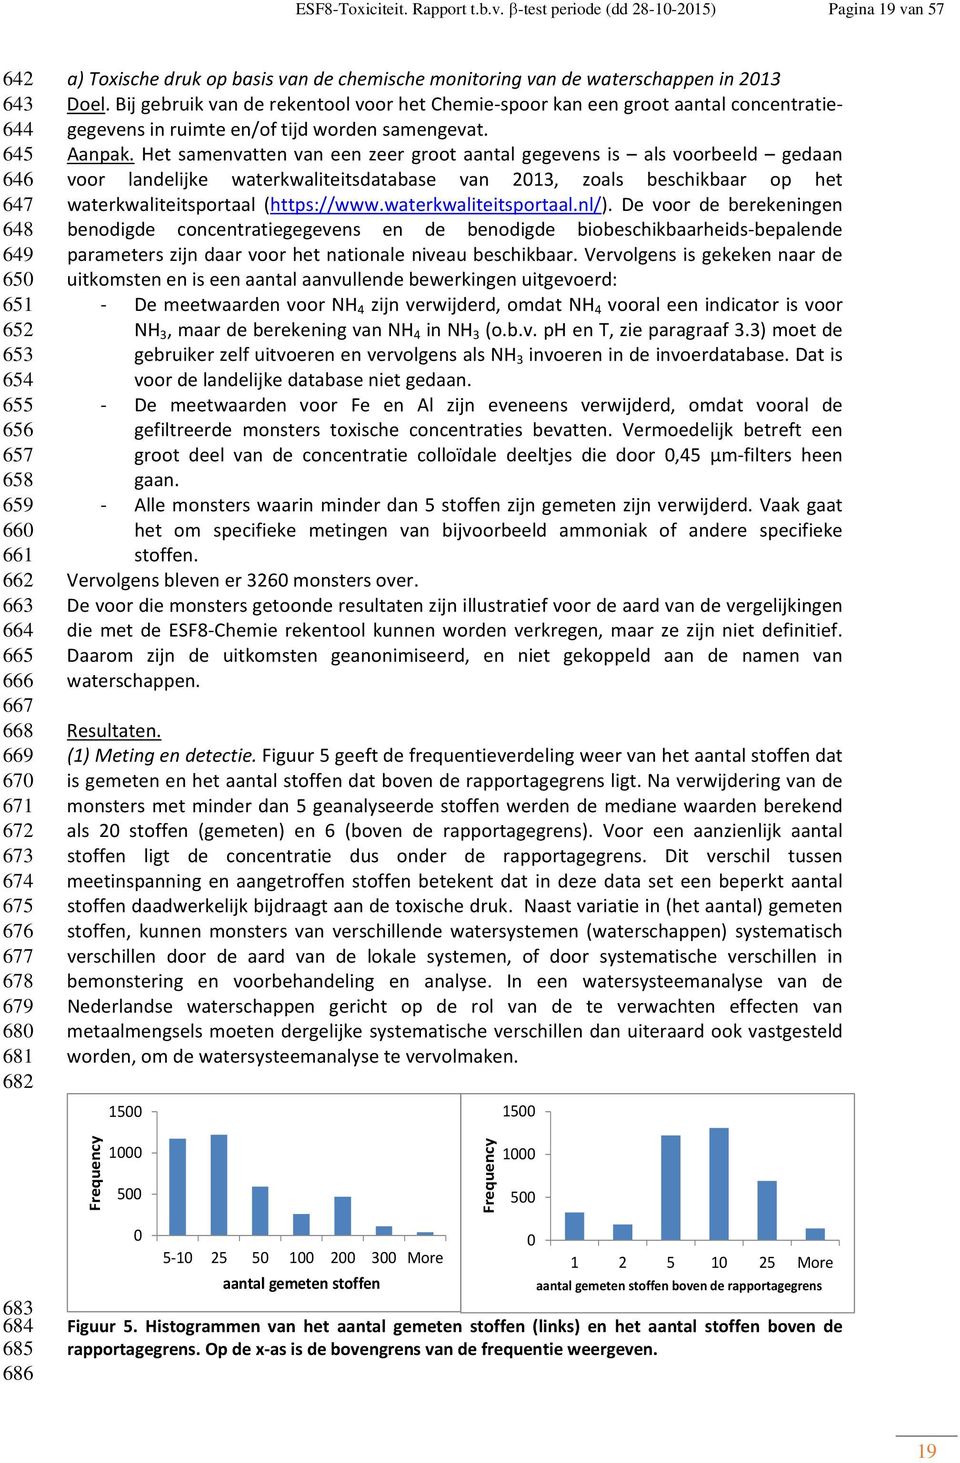 680 681 682 a) Toxische druk op basis van de chemische monitoring van de waterschappen in 2013 Doel.